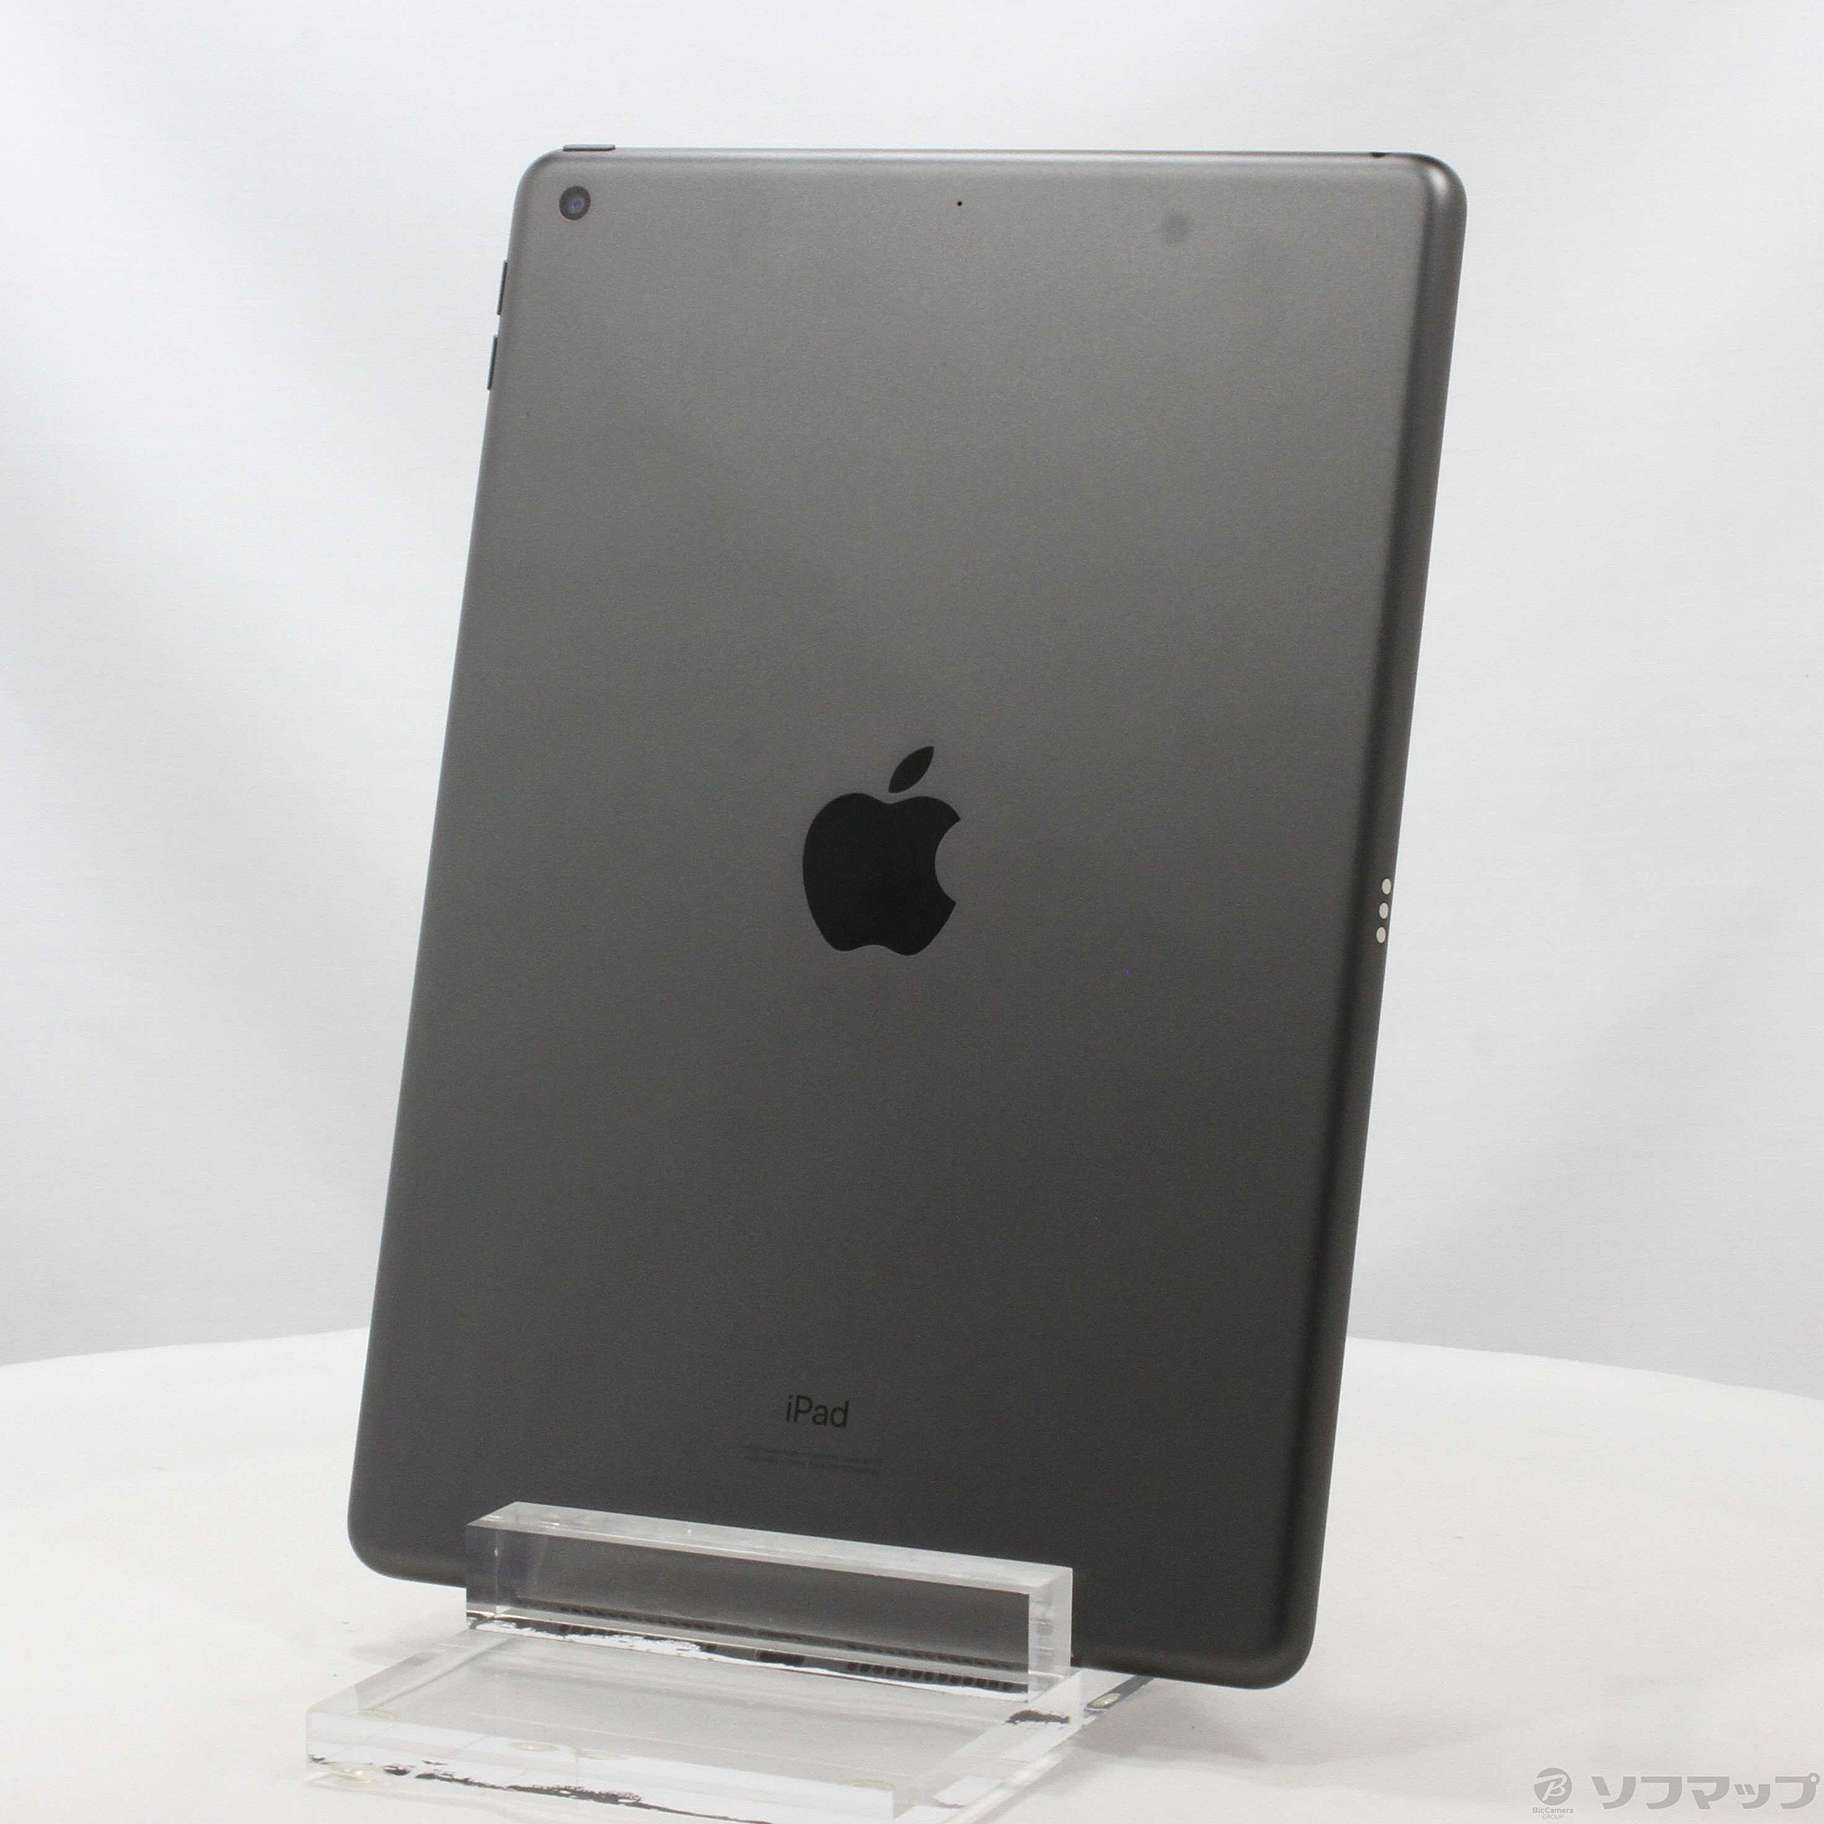 (中古)Apple iPad 第7世代 32GB スペースグレイ MW742LL/A Wi-Fi(348-ud)